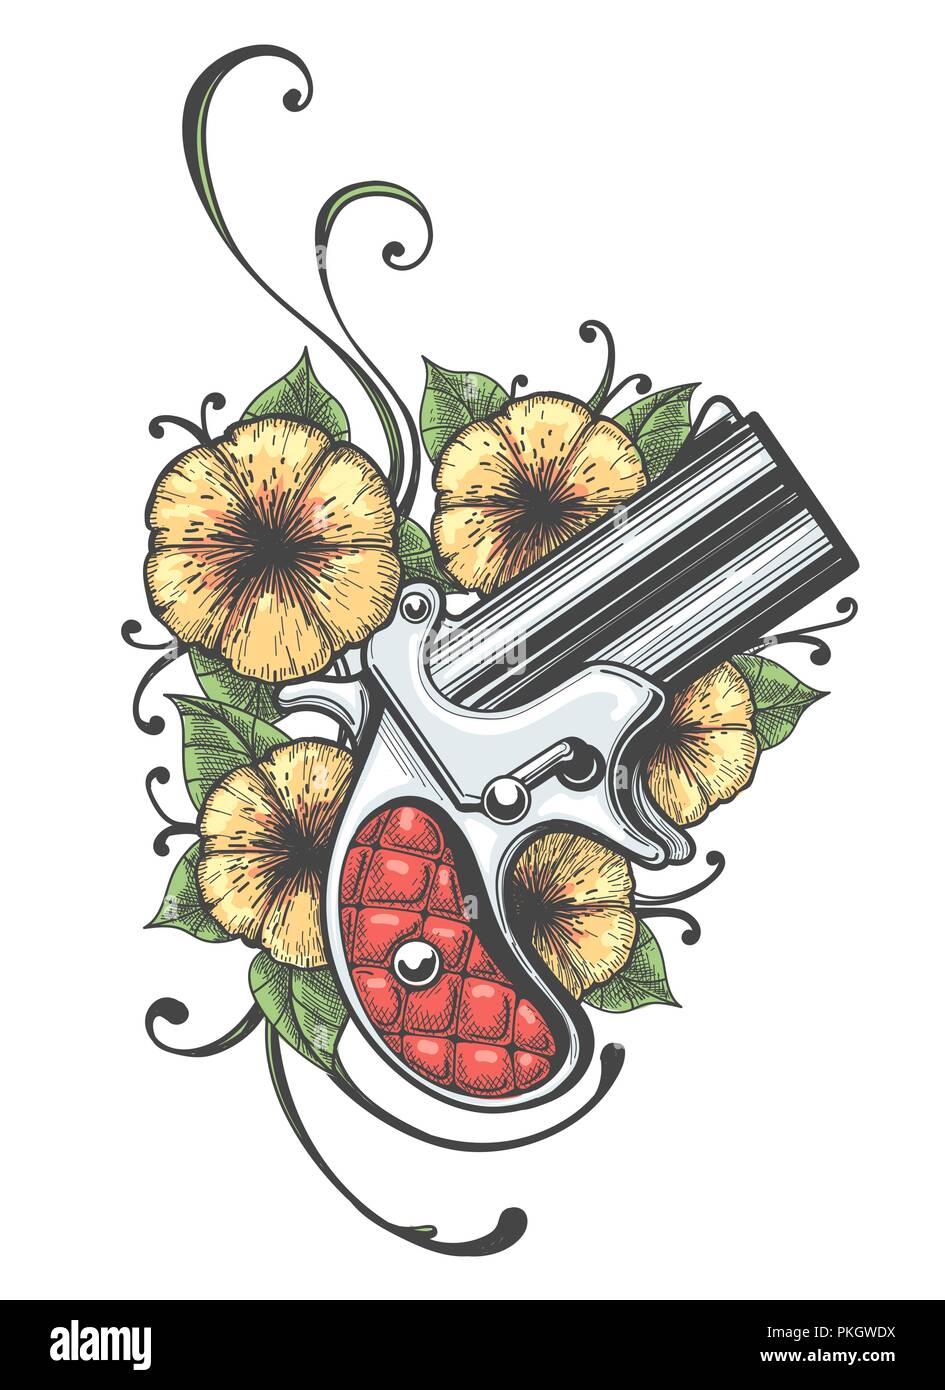 Pistola de bolsillo y flores dibujadas en el estilo de tatuaje. Ilustración vectorial. Ilustración del Vector